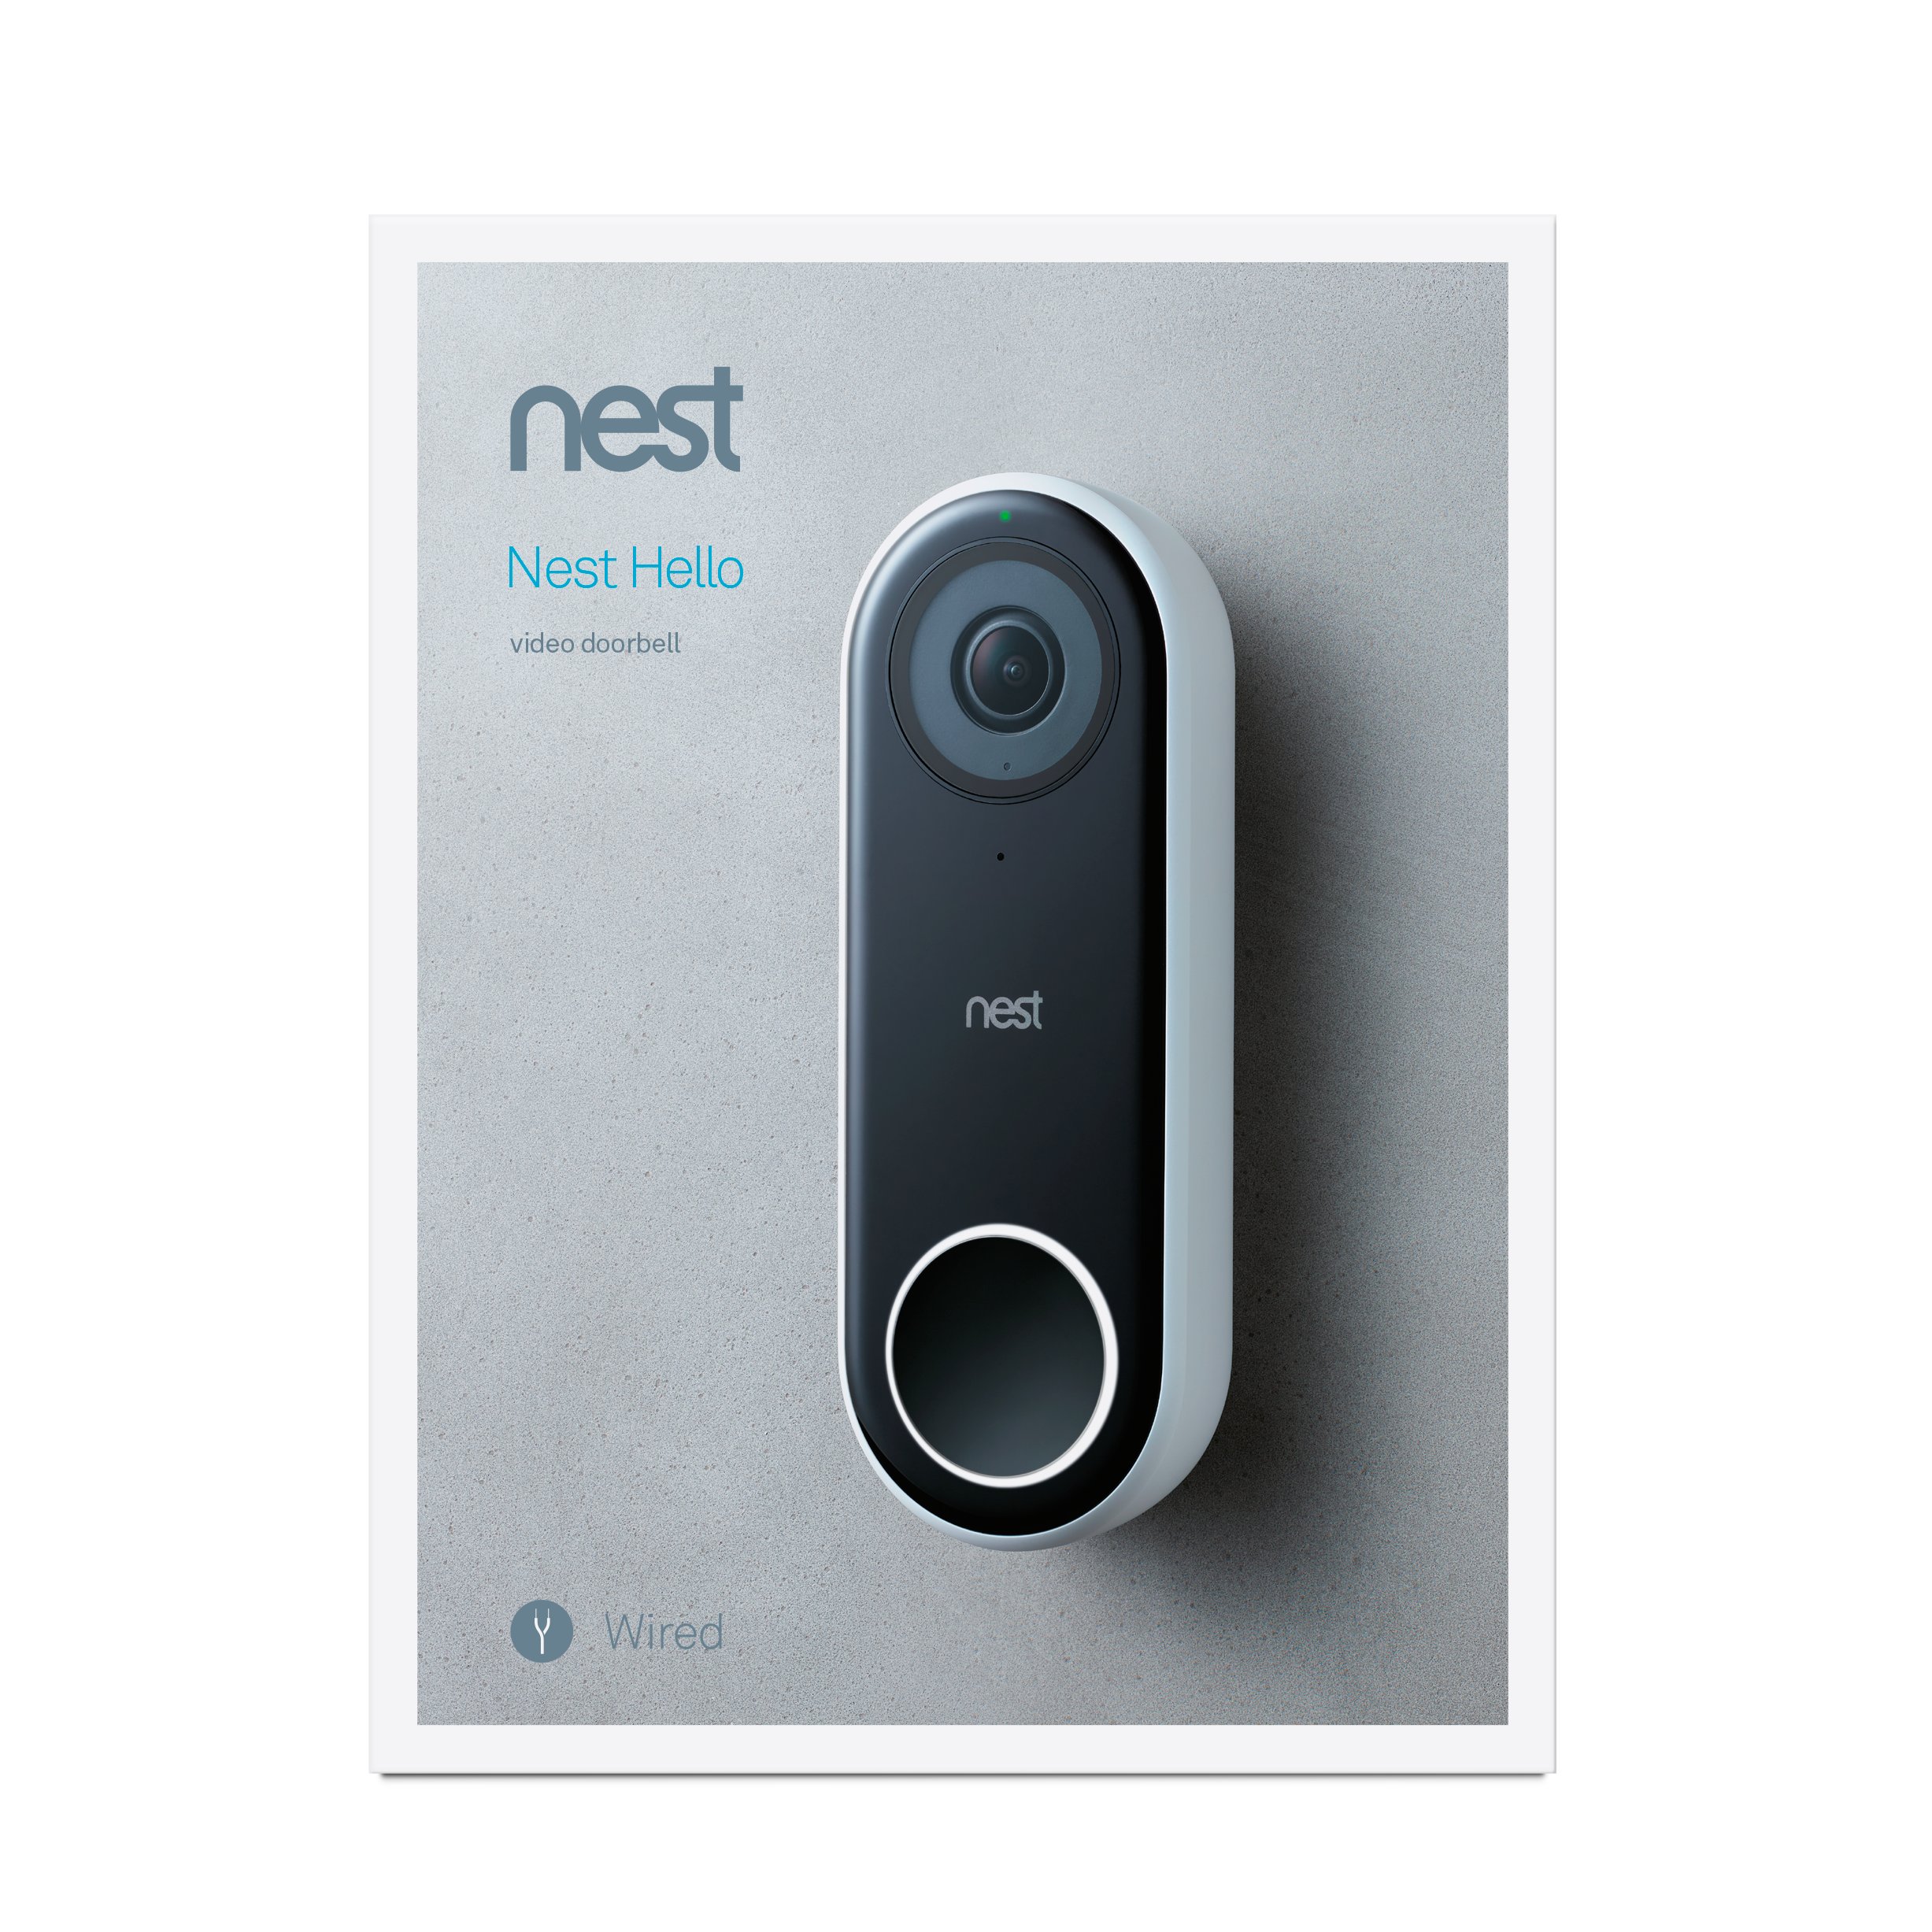 nest doorbell requirements